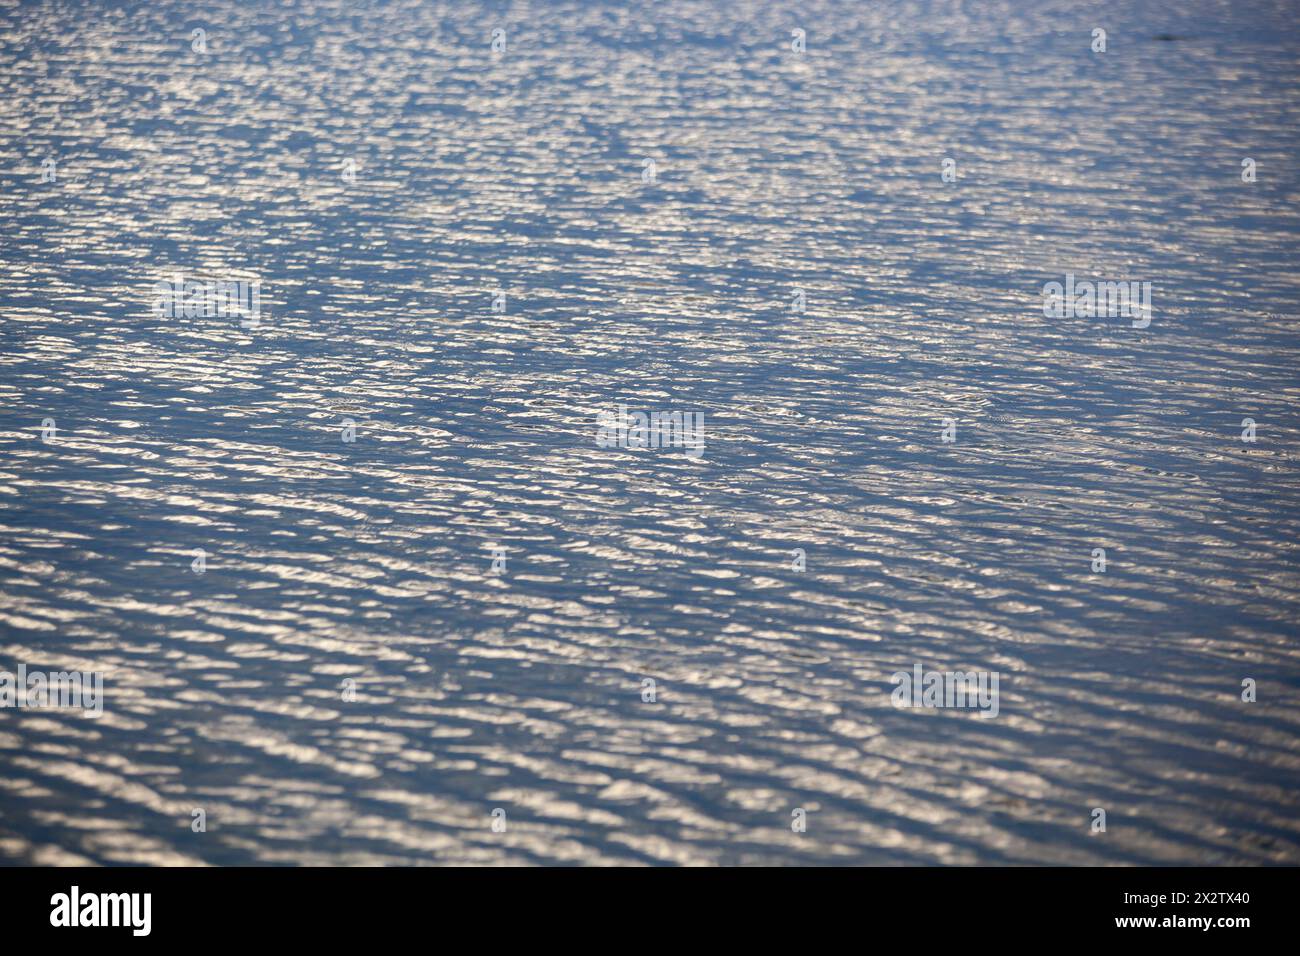 Vue aérienne de la surface de la mer, texture vue à vol d'oiseau. Photo des vagues bleues et de la texture de la surface de l'eau. Fond bleu de mer. Horizontal Banque D'Images